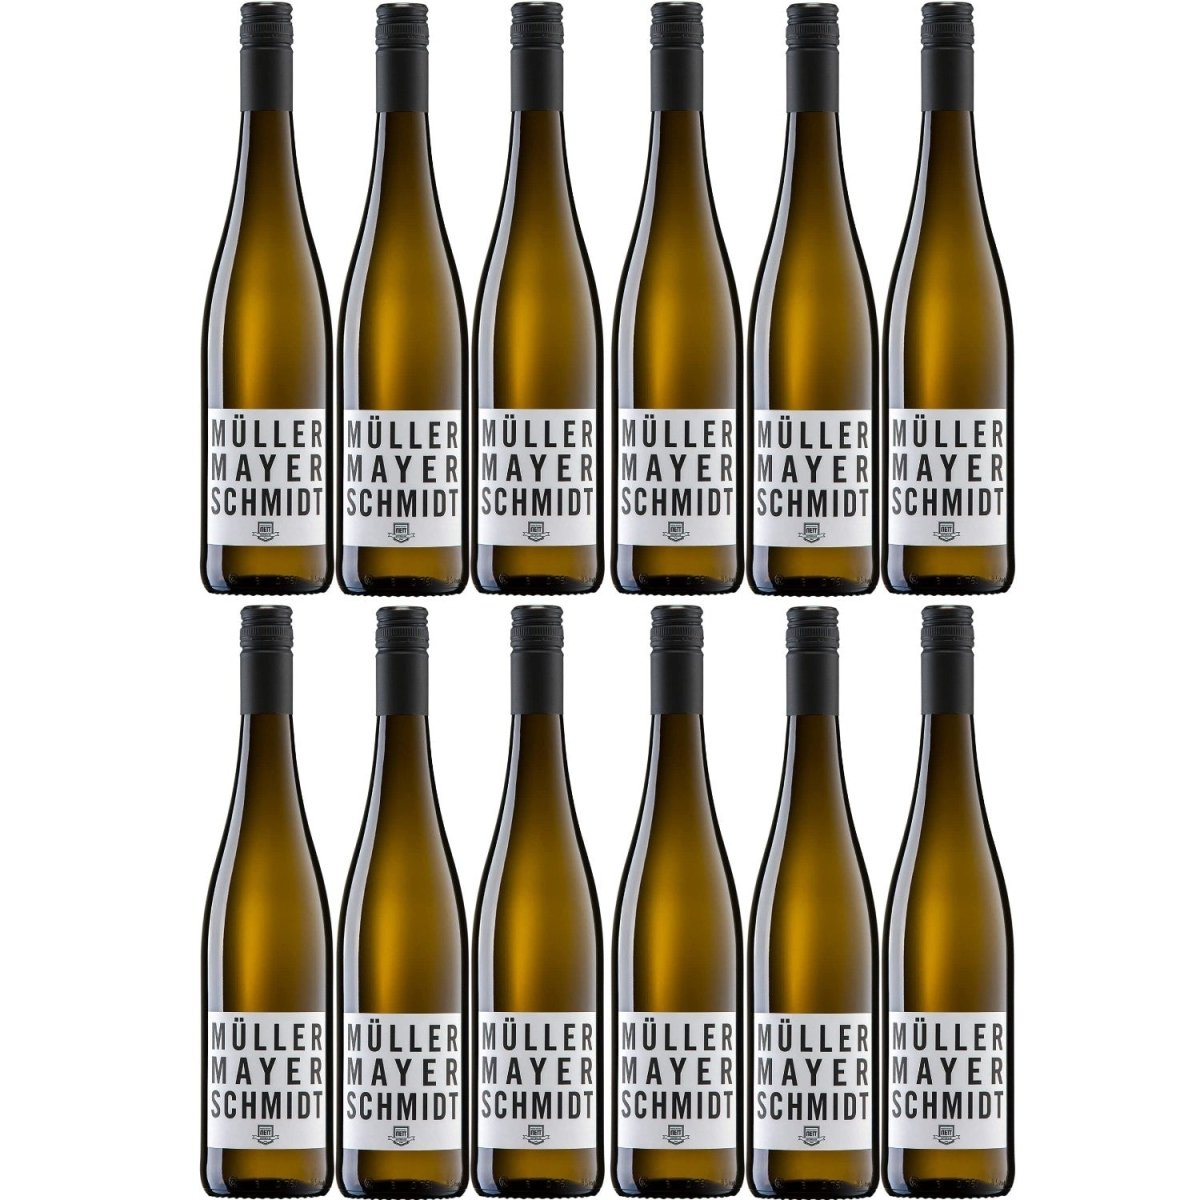 Bergdolt-Reif & Nett Müller-Mayer-Schmidt Müller-Thurgau Weißwein Wein Trocken Pfalz (12 x 0,75l) - Versanel -